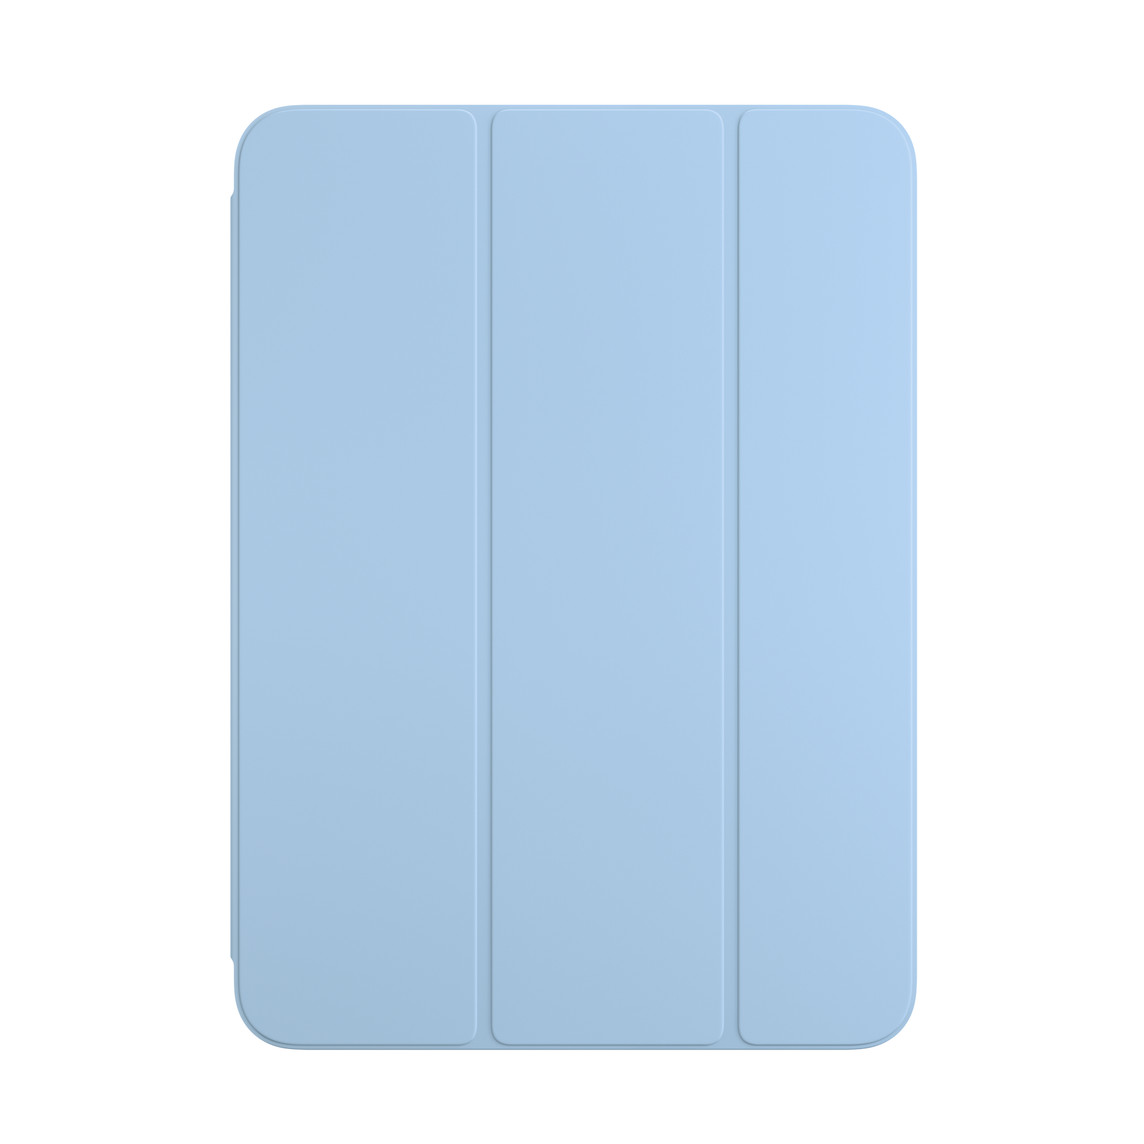 适用于 iPad 的晴空蓝色智能双面夹的正面视图